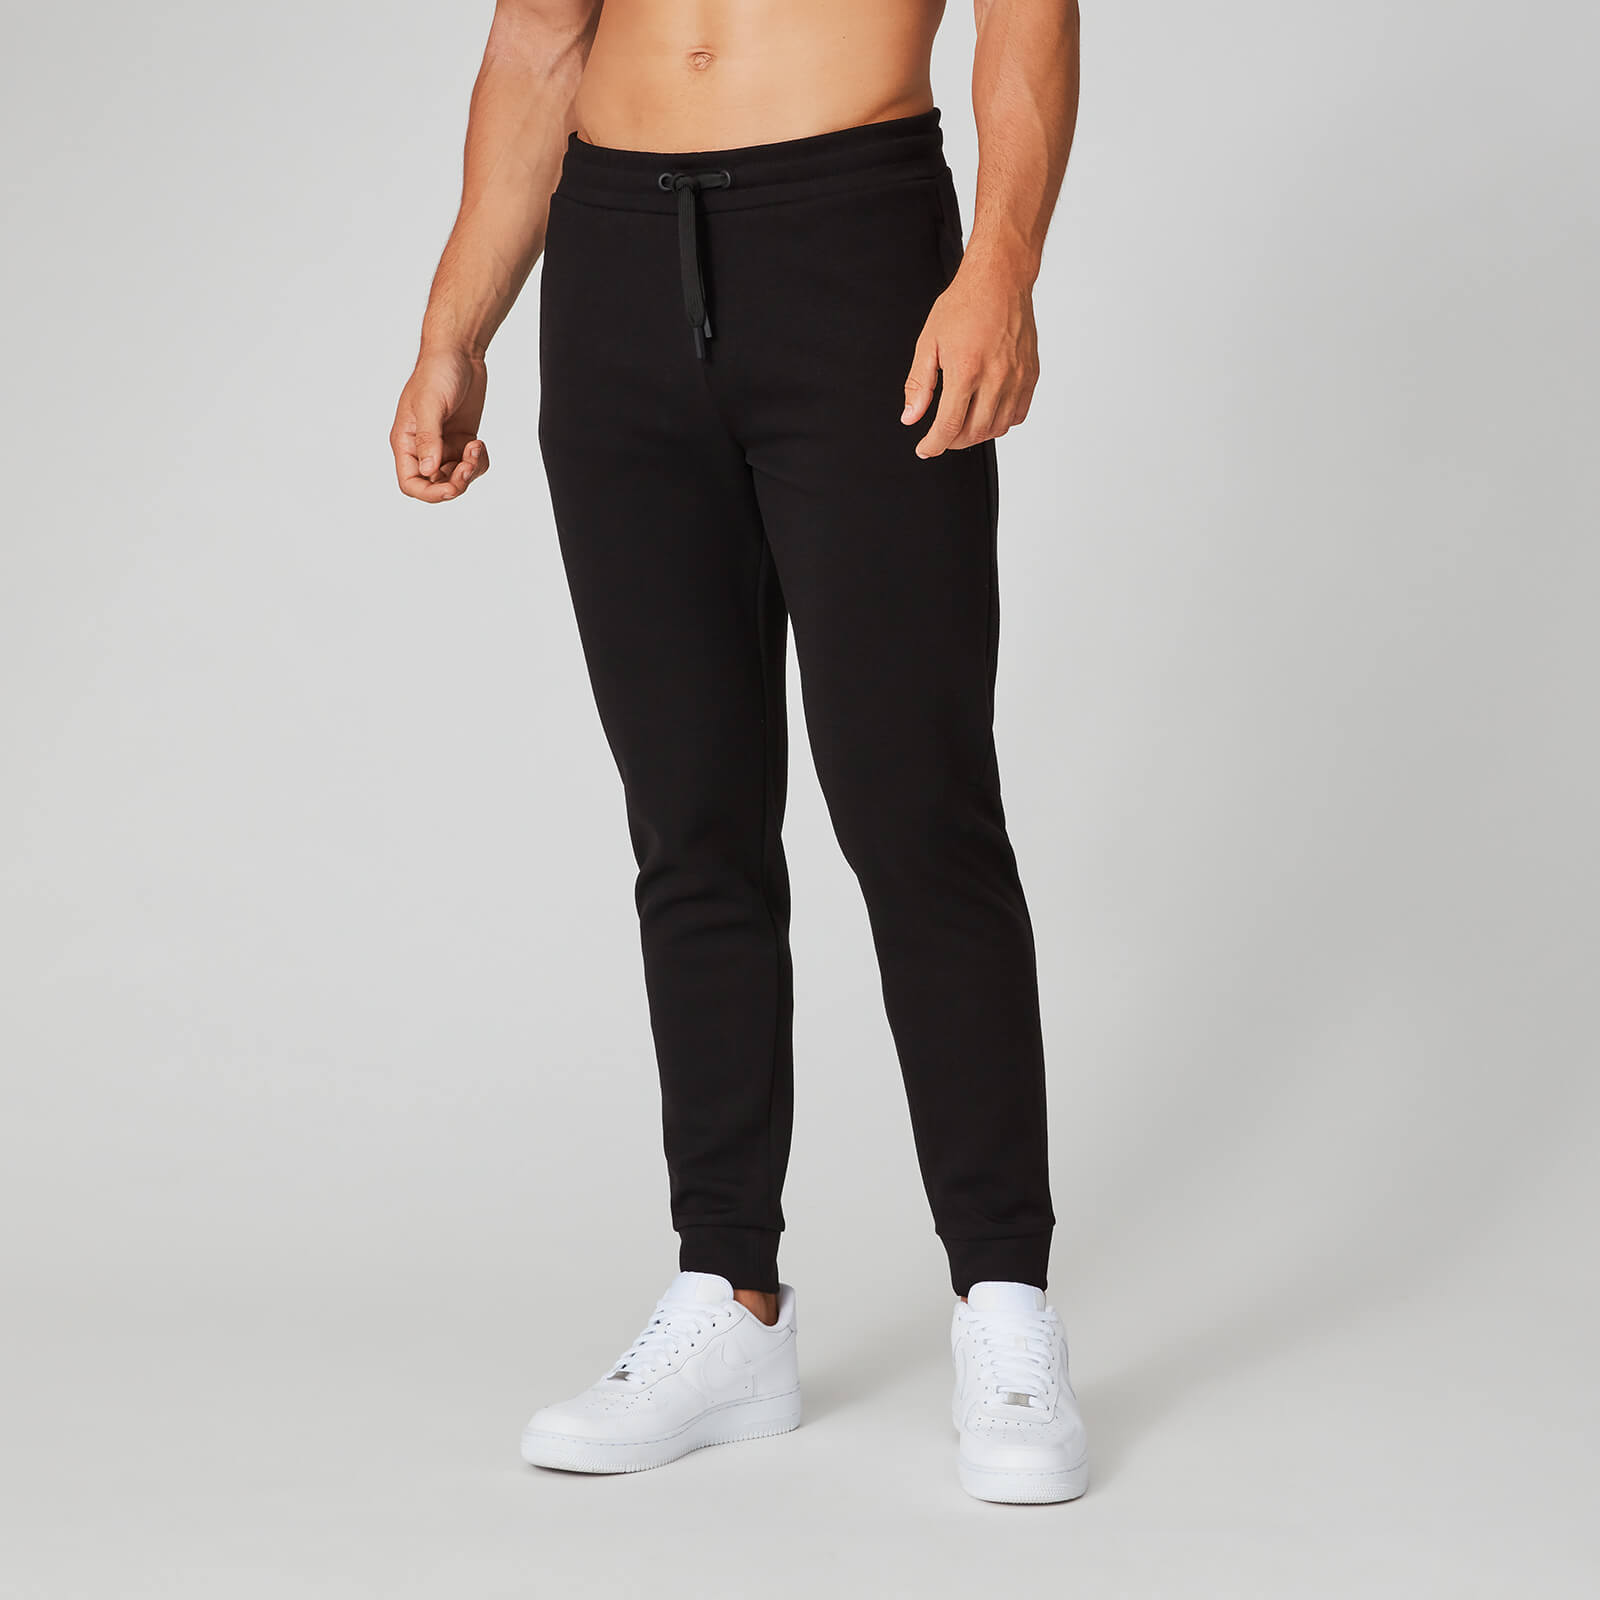 Pantalon de jogging Form Pro - Noir